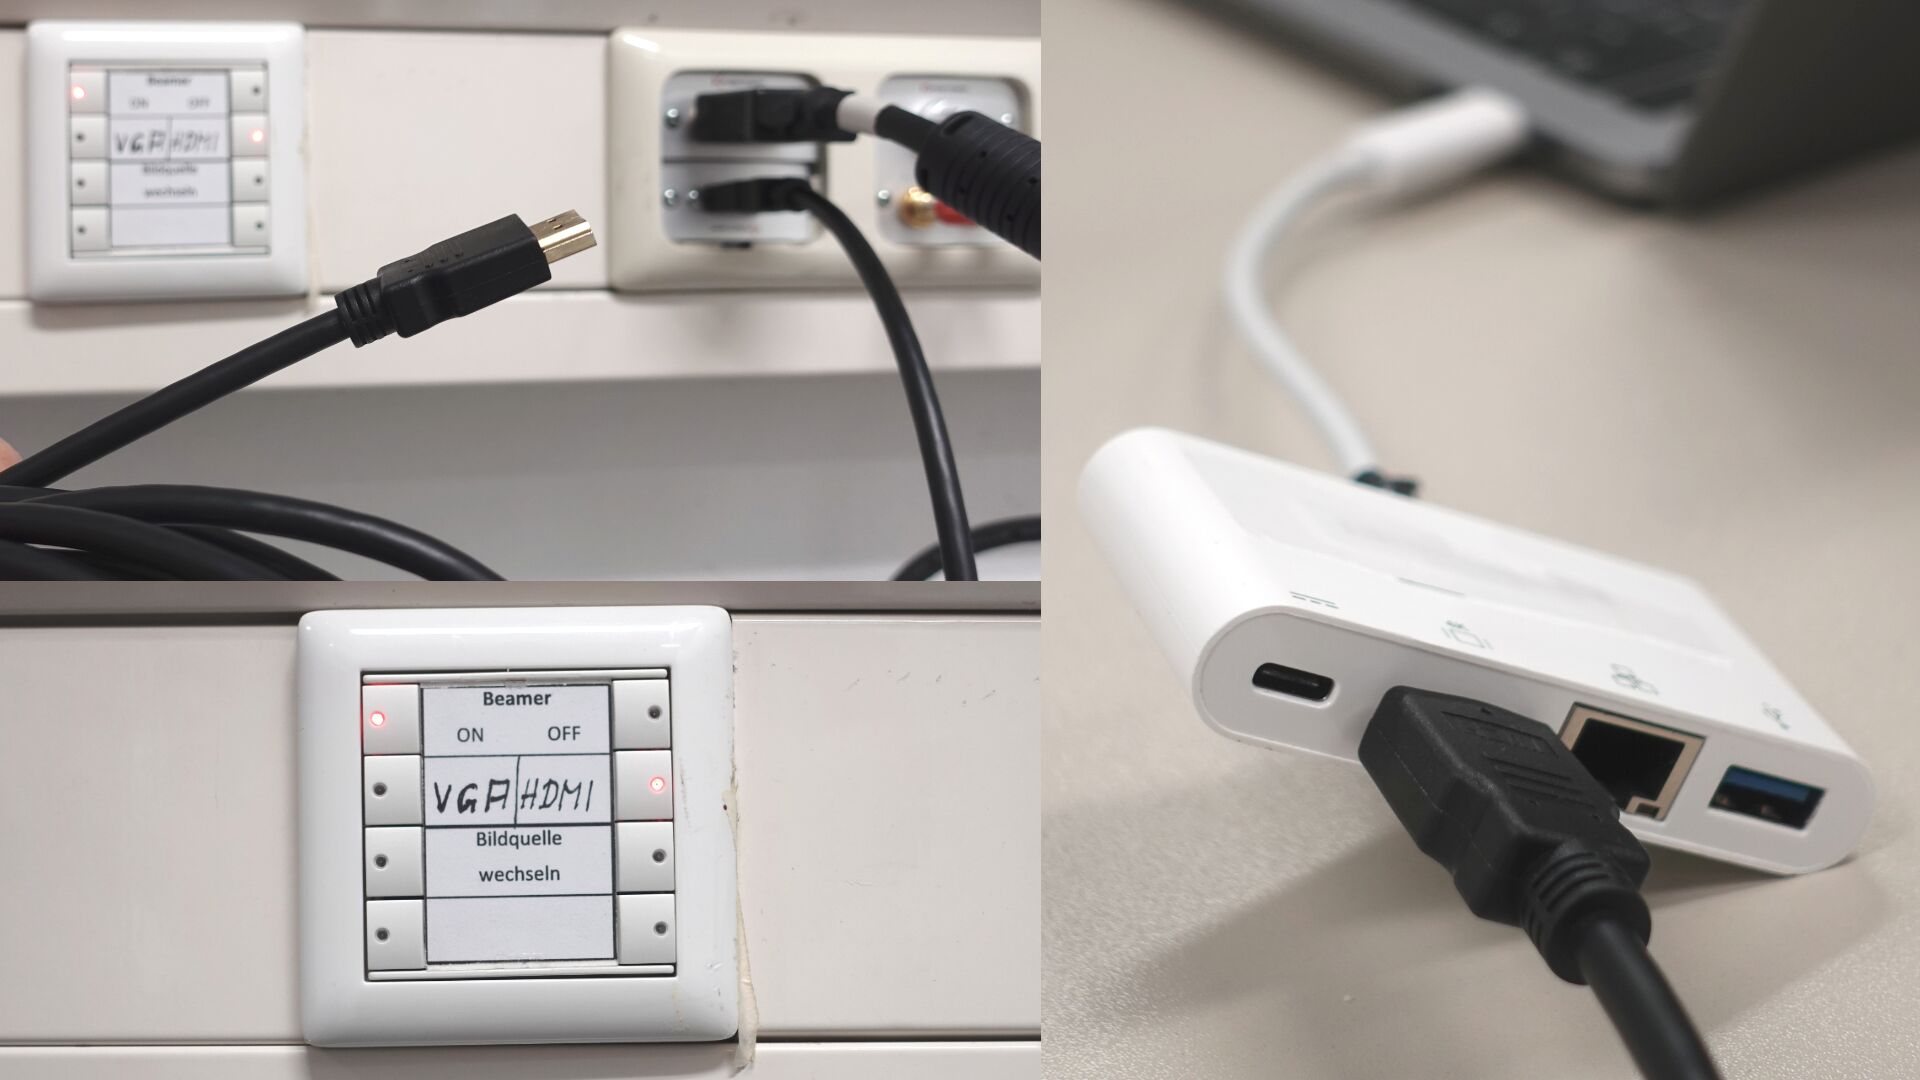 Bilderstrecke mit drei Fotos: Das Einschaltfeld für den Beamer auf 'ON' und 'HDMI' geschaltet, ein HDMI-Kabel, ein in einen HDMI-Adapter gestecktes HDMI-Kabel ist mit einem Rechner verbunden.